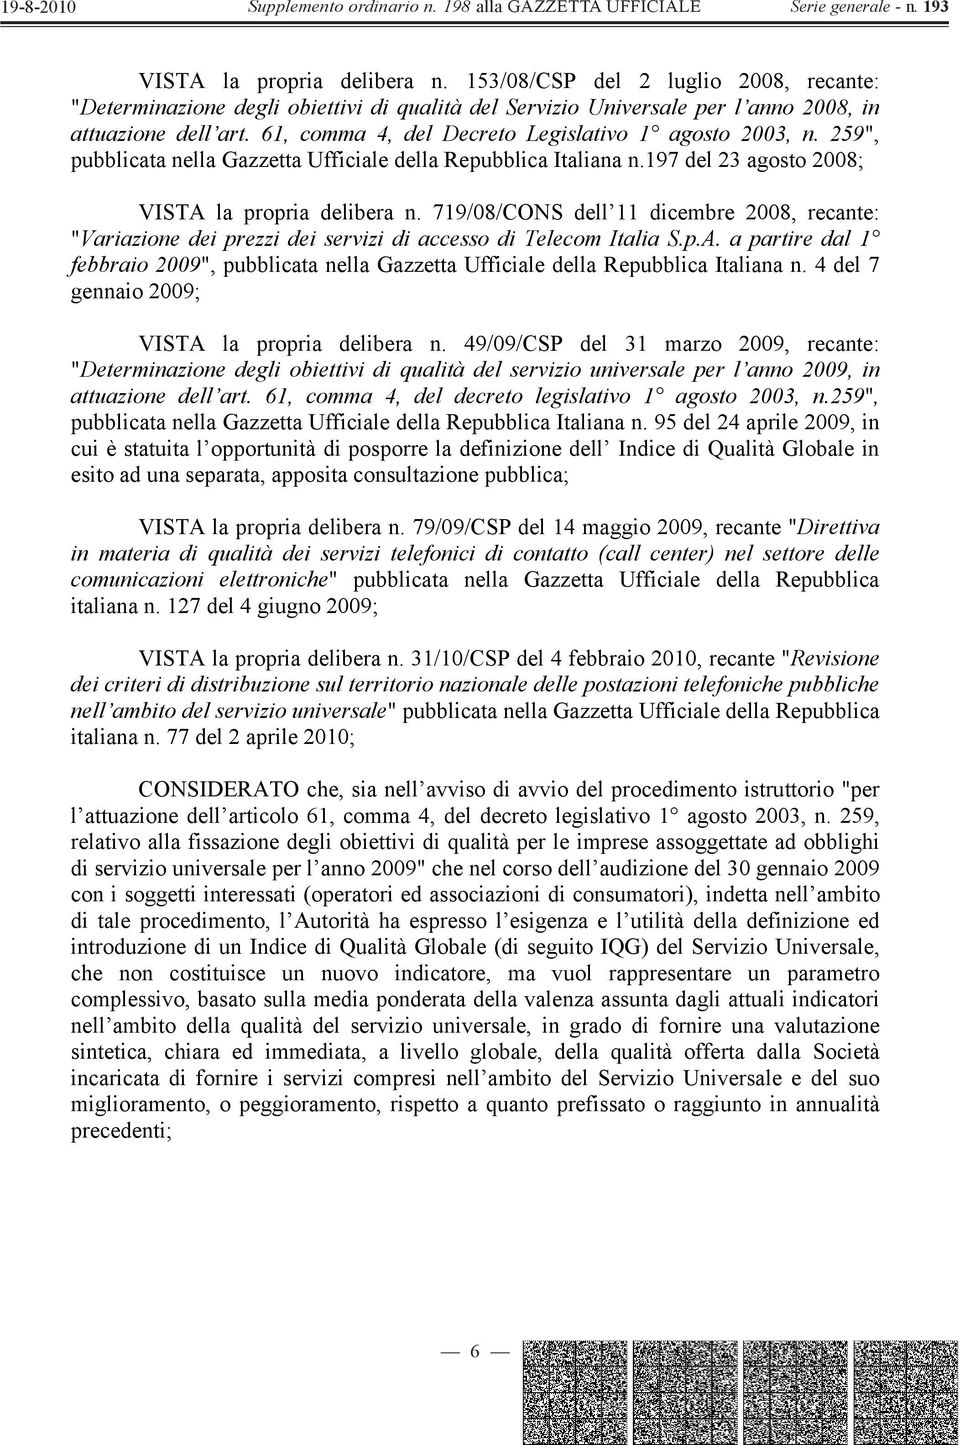 719/08/CONS dell 11 dicembre 2008, recante: "Variazione dei prezzi dei servizi di accesso di Telecom Italia S.p.A.